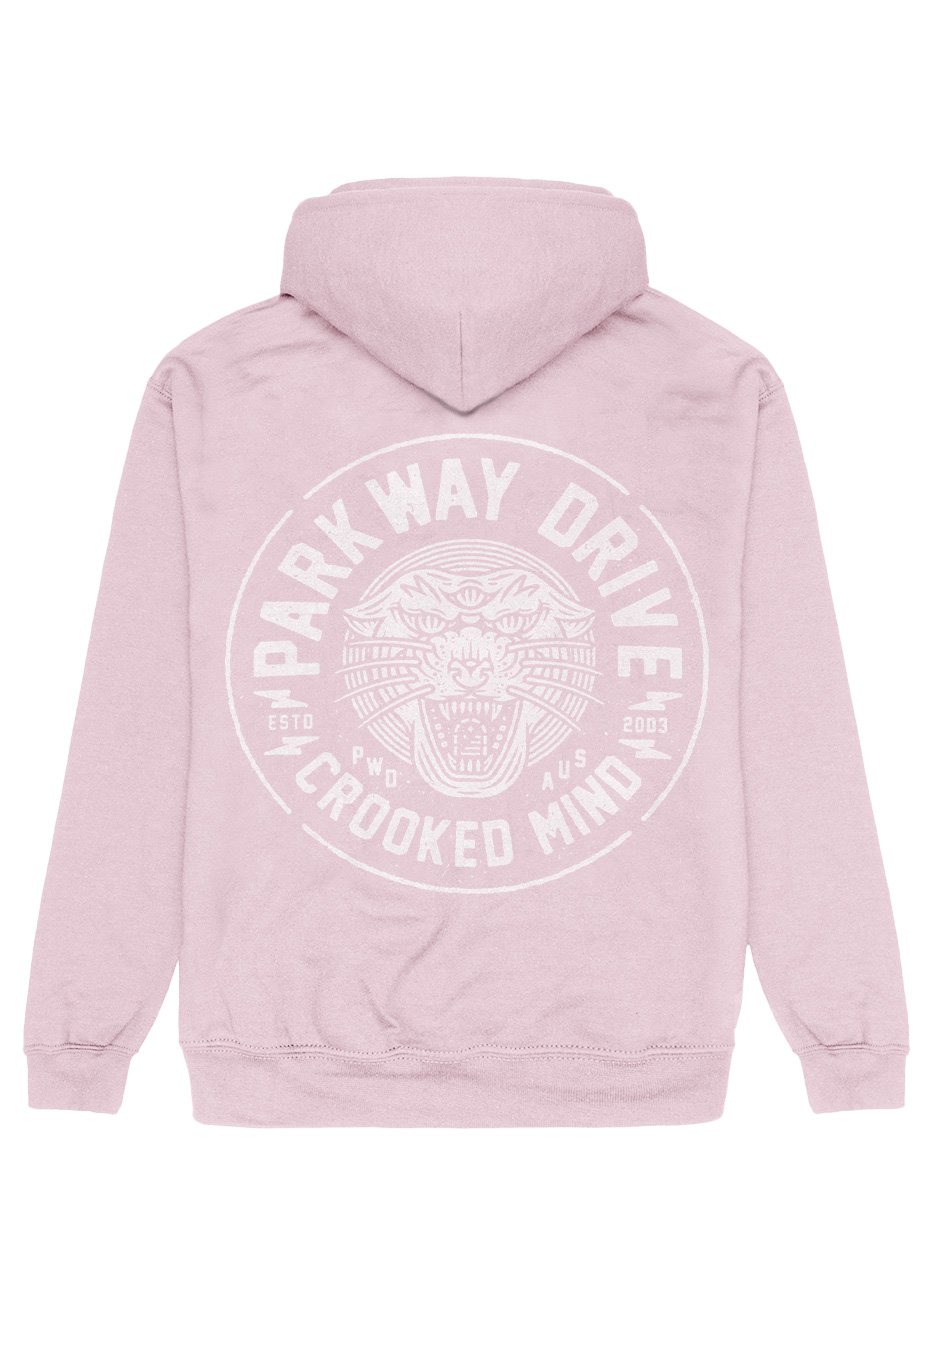 Parkway Drive - Crooked Mind Pink - Hoodie